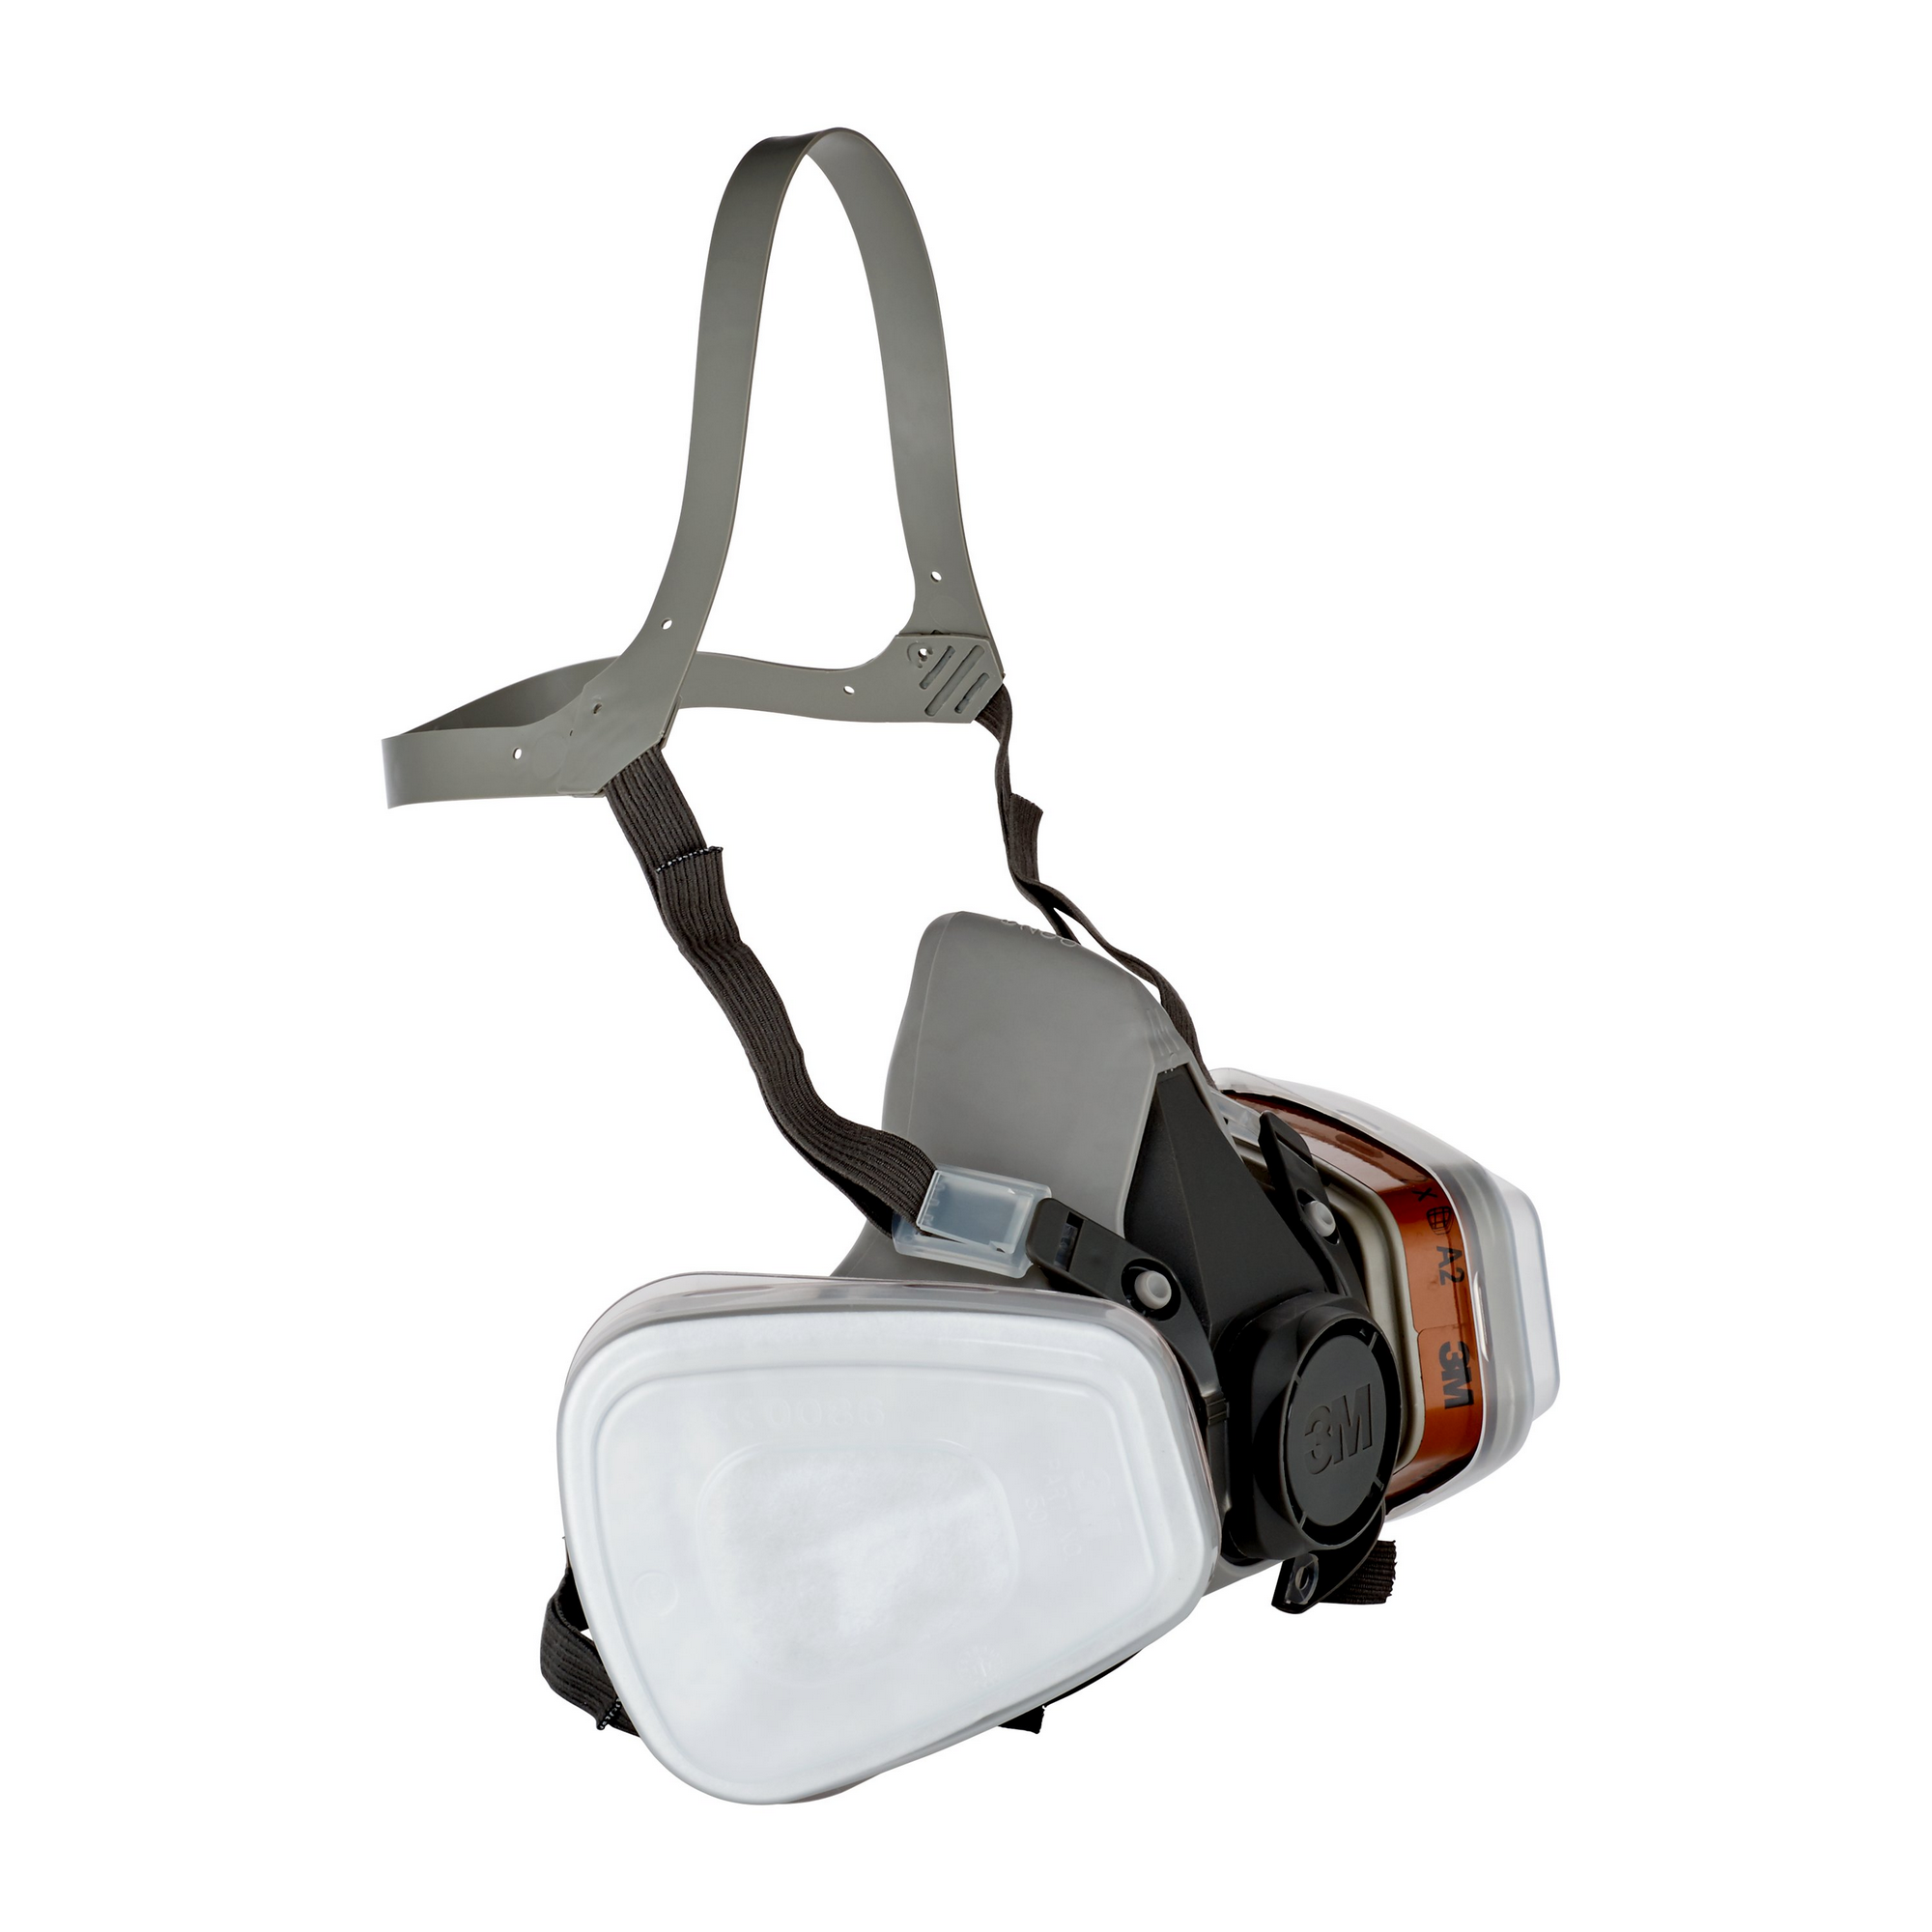 A2P2-Atemschutzmaske für Farbspritzarbeiten '6200' 1 Stück + product picture